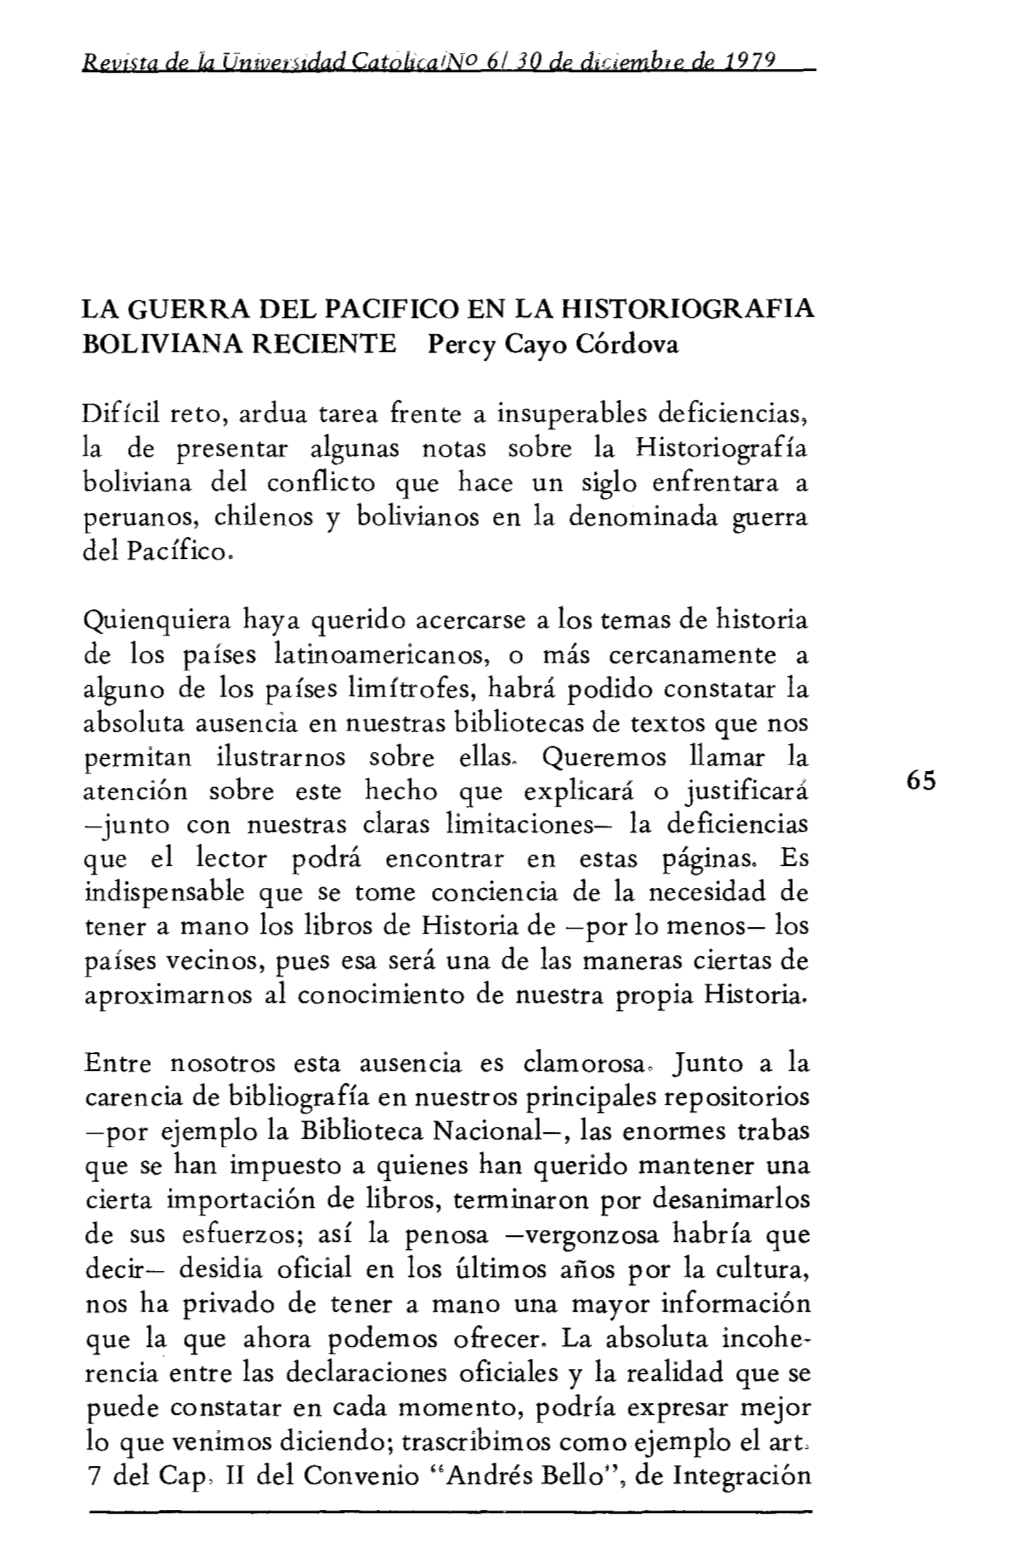 LA GUERRA DEL PACIFICO EN LA HISTORIOGRAFIA BOLIVIANA RECIENTE Percy Cayo Córdova